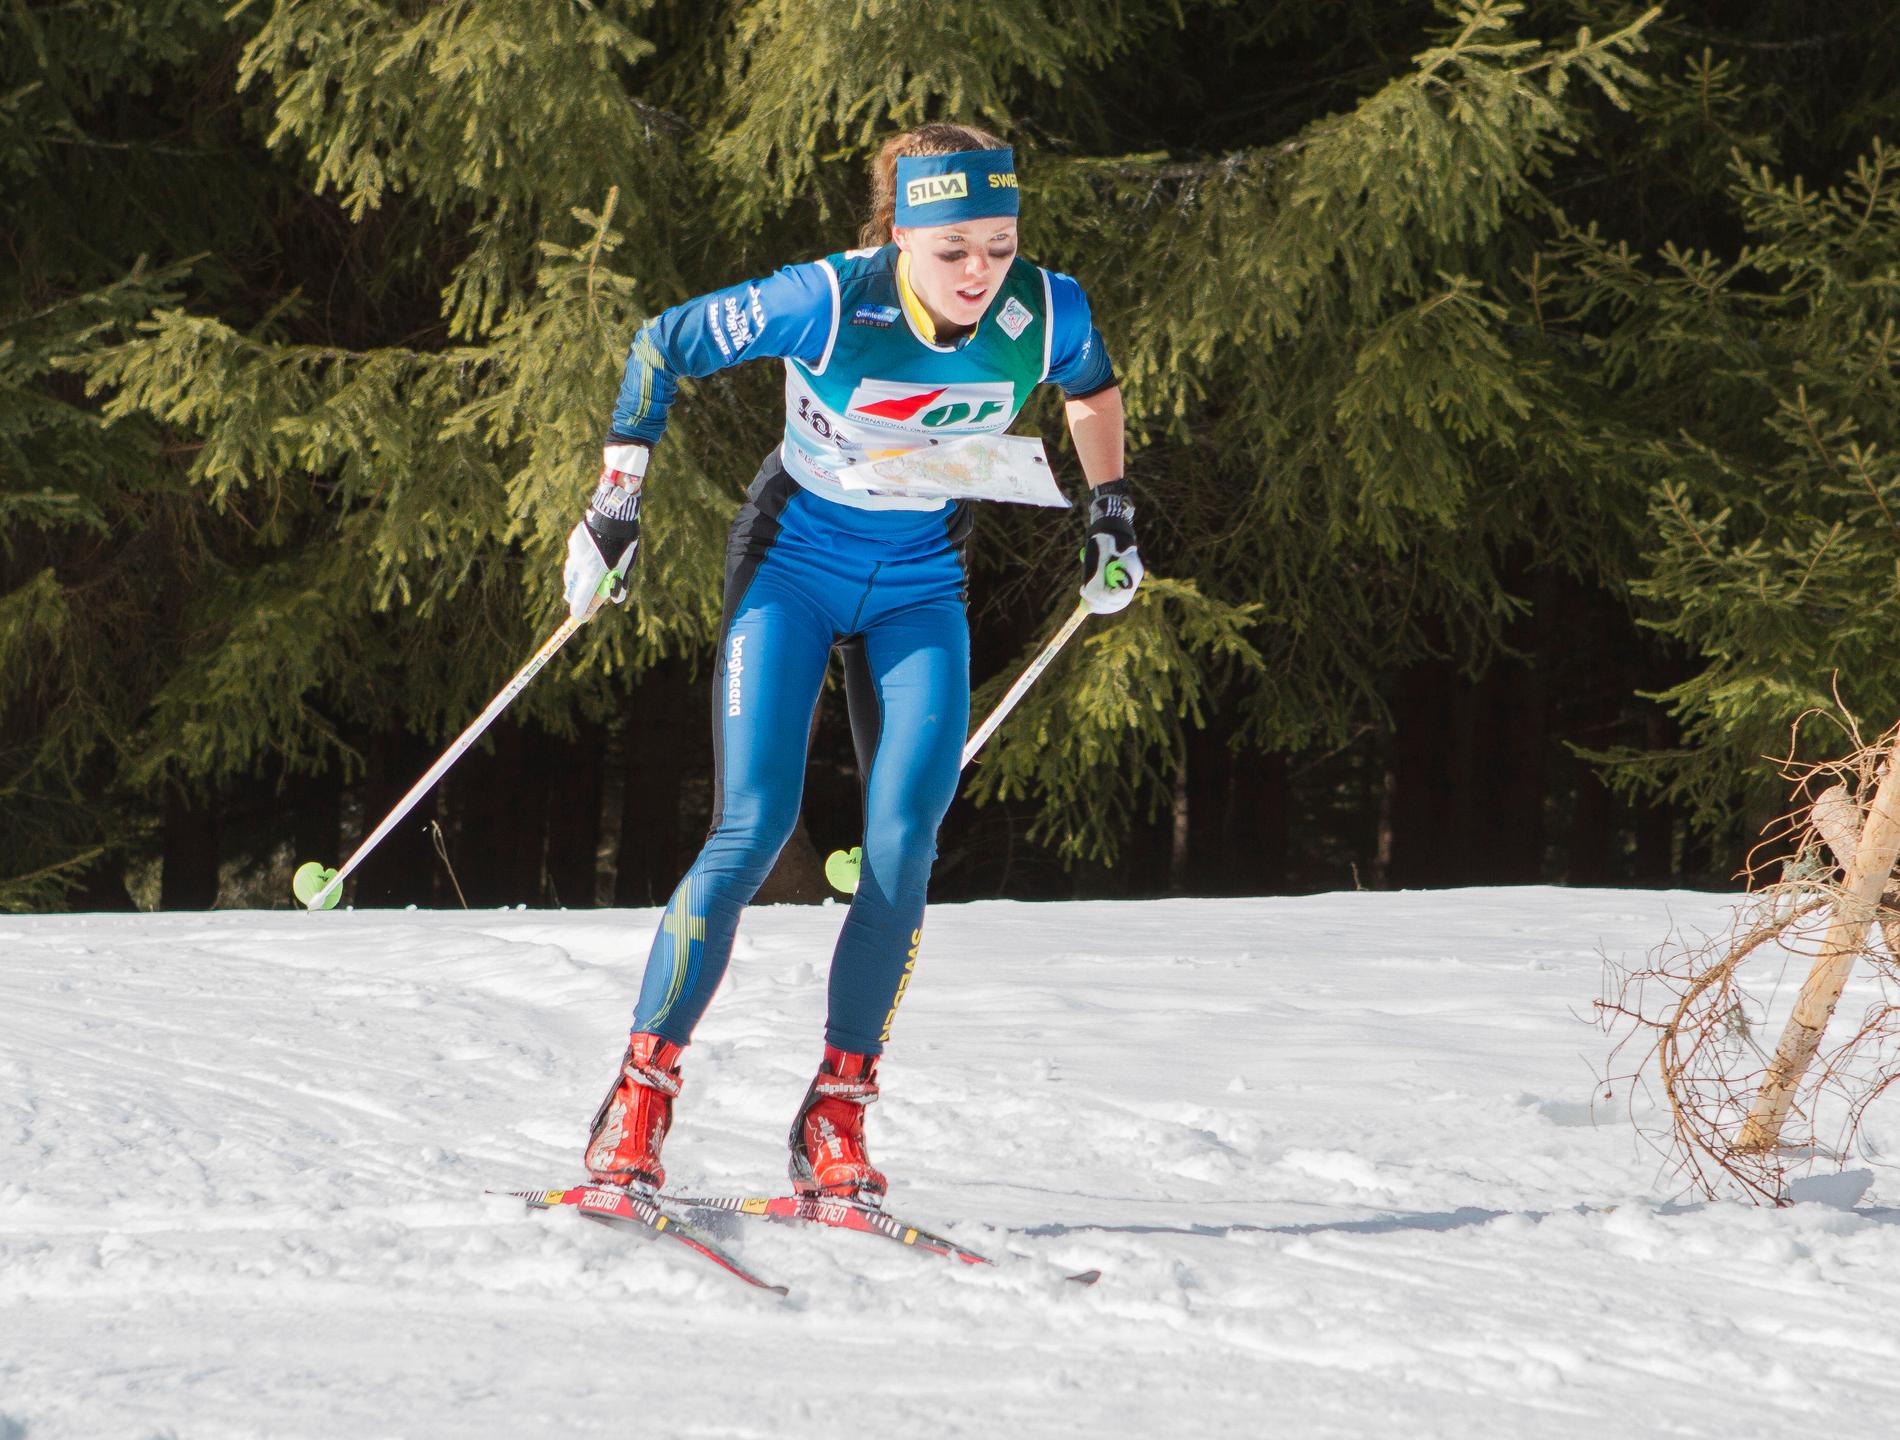 På onsdag inleds VM i skidorientering i Piteå med långdistansloppet. Den svenska storstjärnan Tove Alexandersson är en av guldkandidaterna.